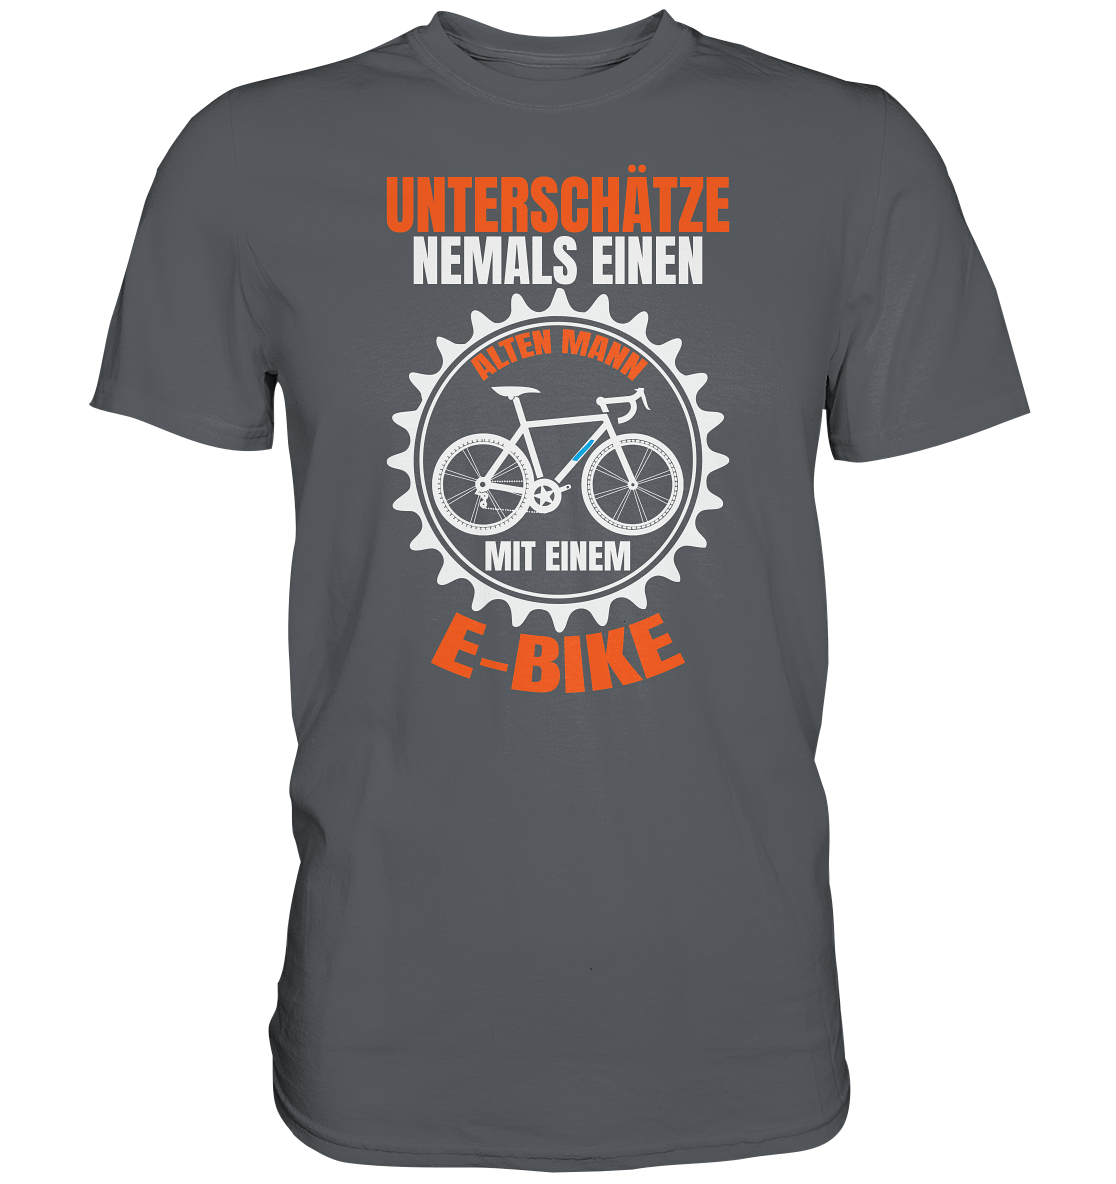 Unterschätze niemals einen alten Mann mit einem E-Bike - Premium unisex Shirt